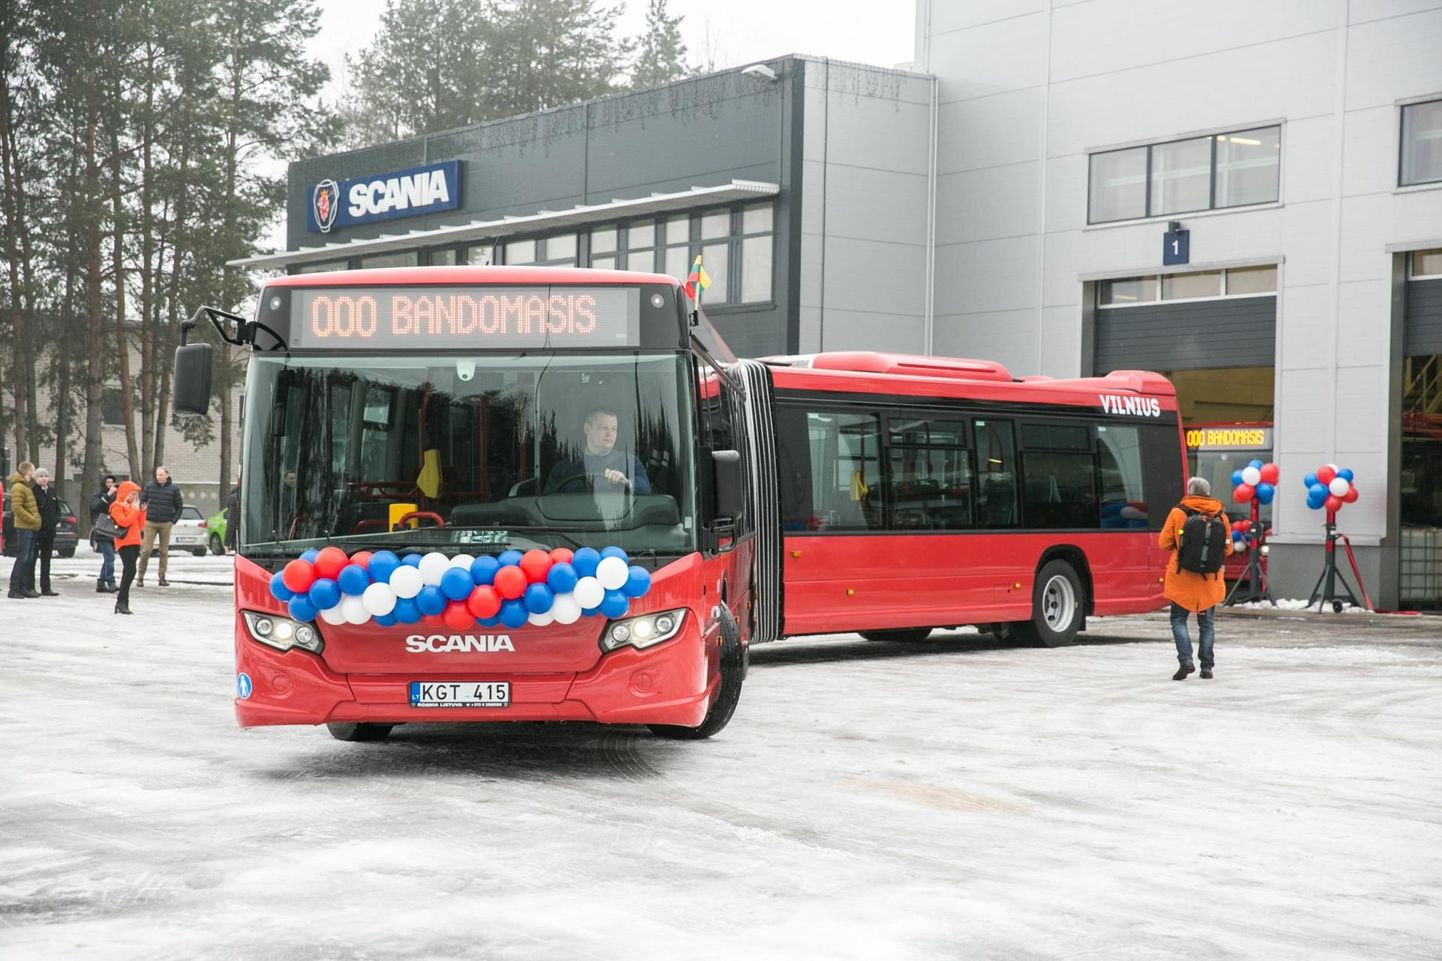 Vilniusel pole uute bussidega midagi peale
hakata, kui pole kedagi, kes neid juhiks.